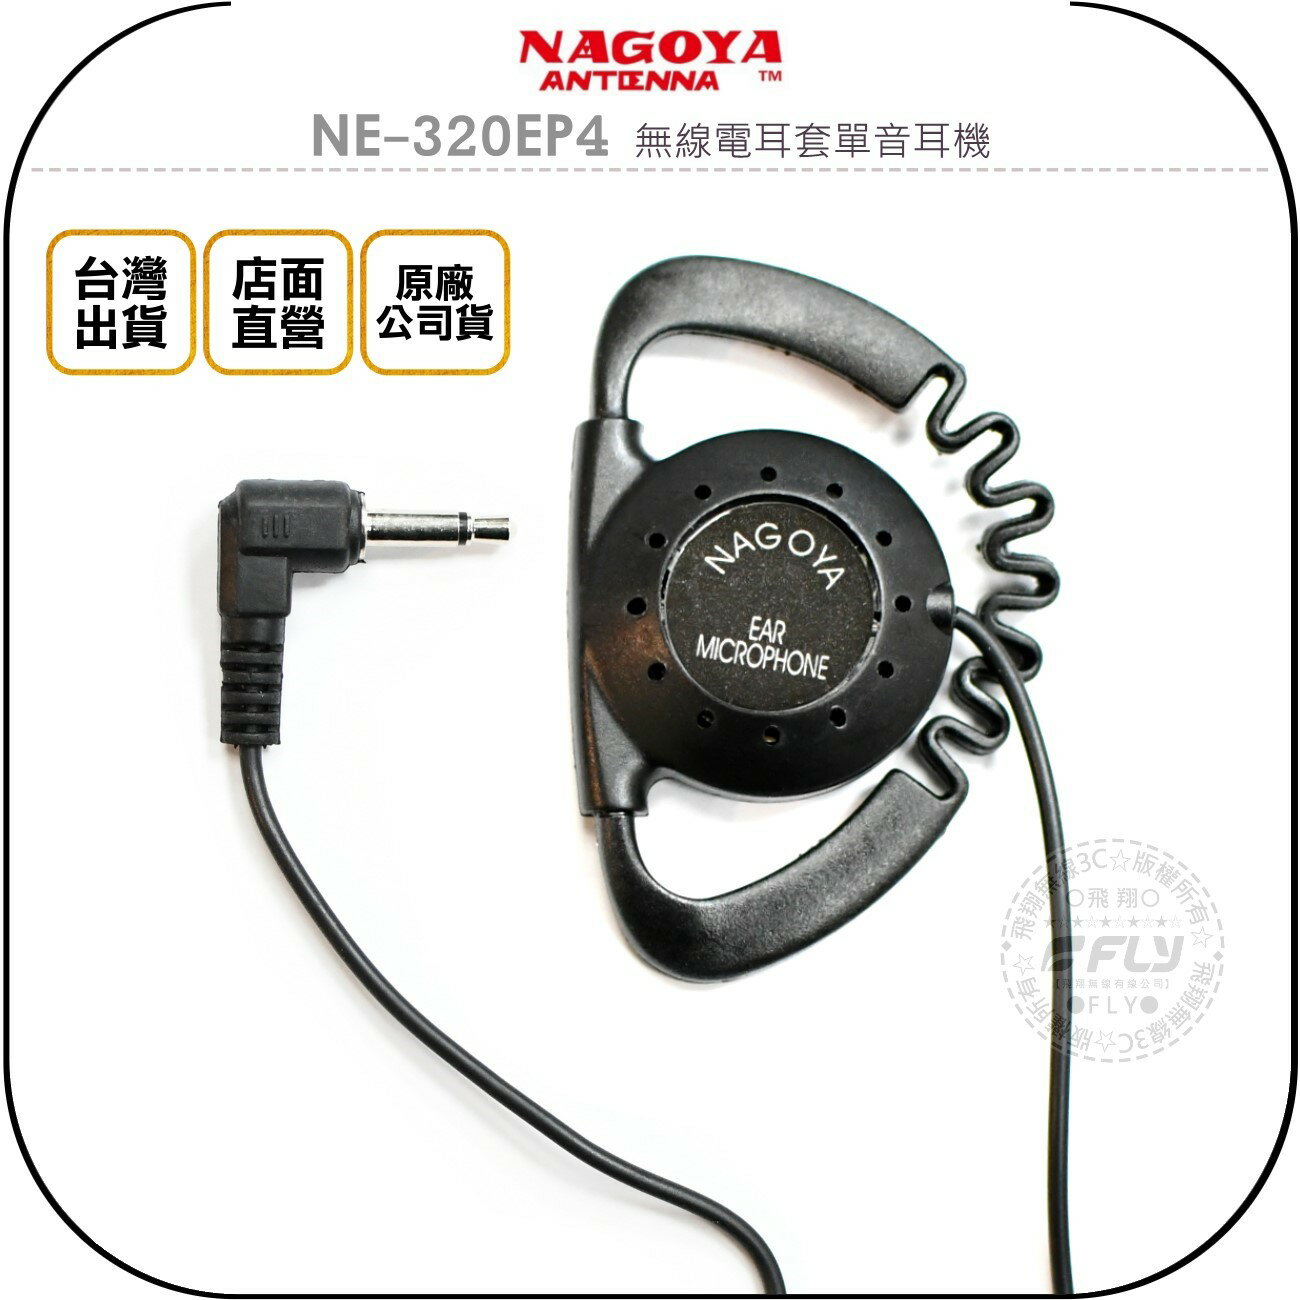 《飛翔無線3C》NAGOYA NE-320EP4 無線電耳套單音耳機◉公司貨◉適用車機 TM-V71A IC-2730A